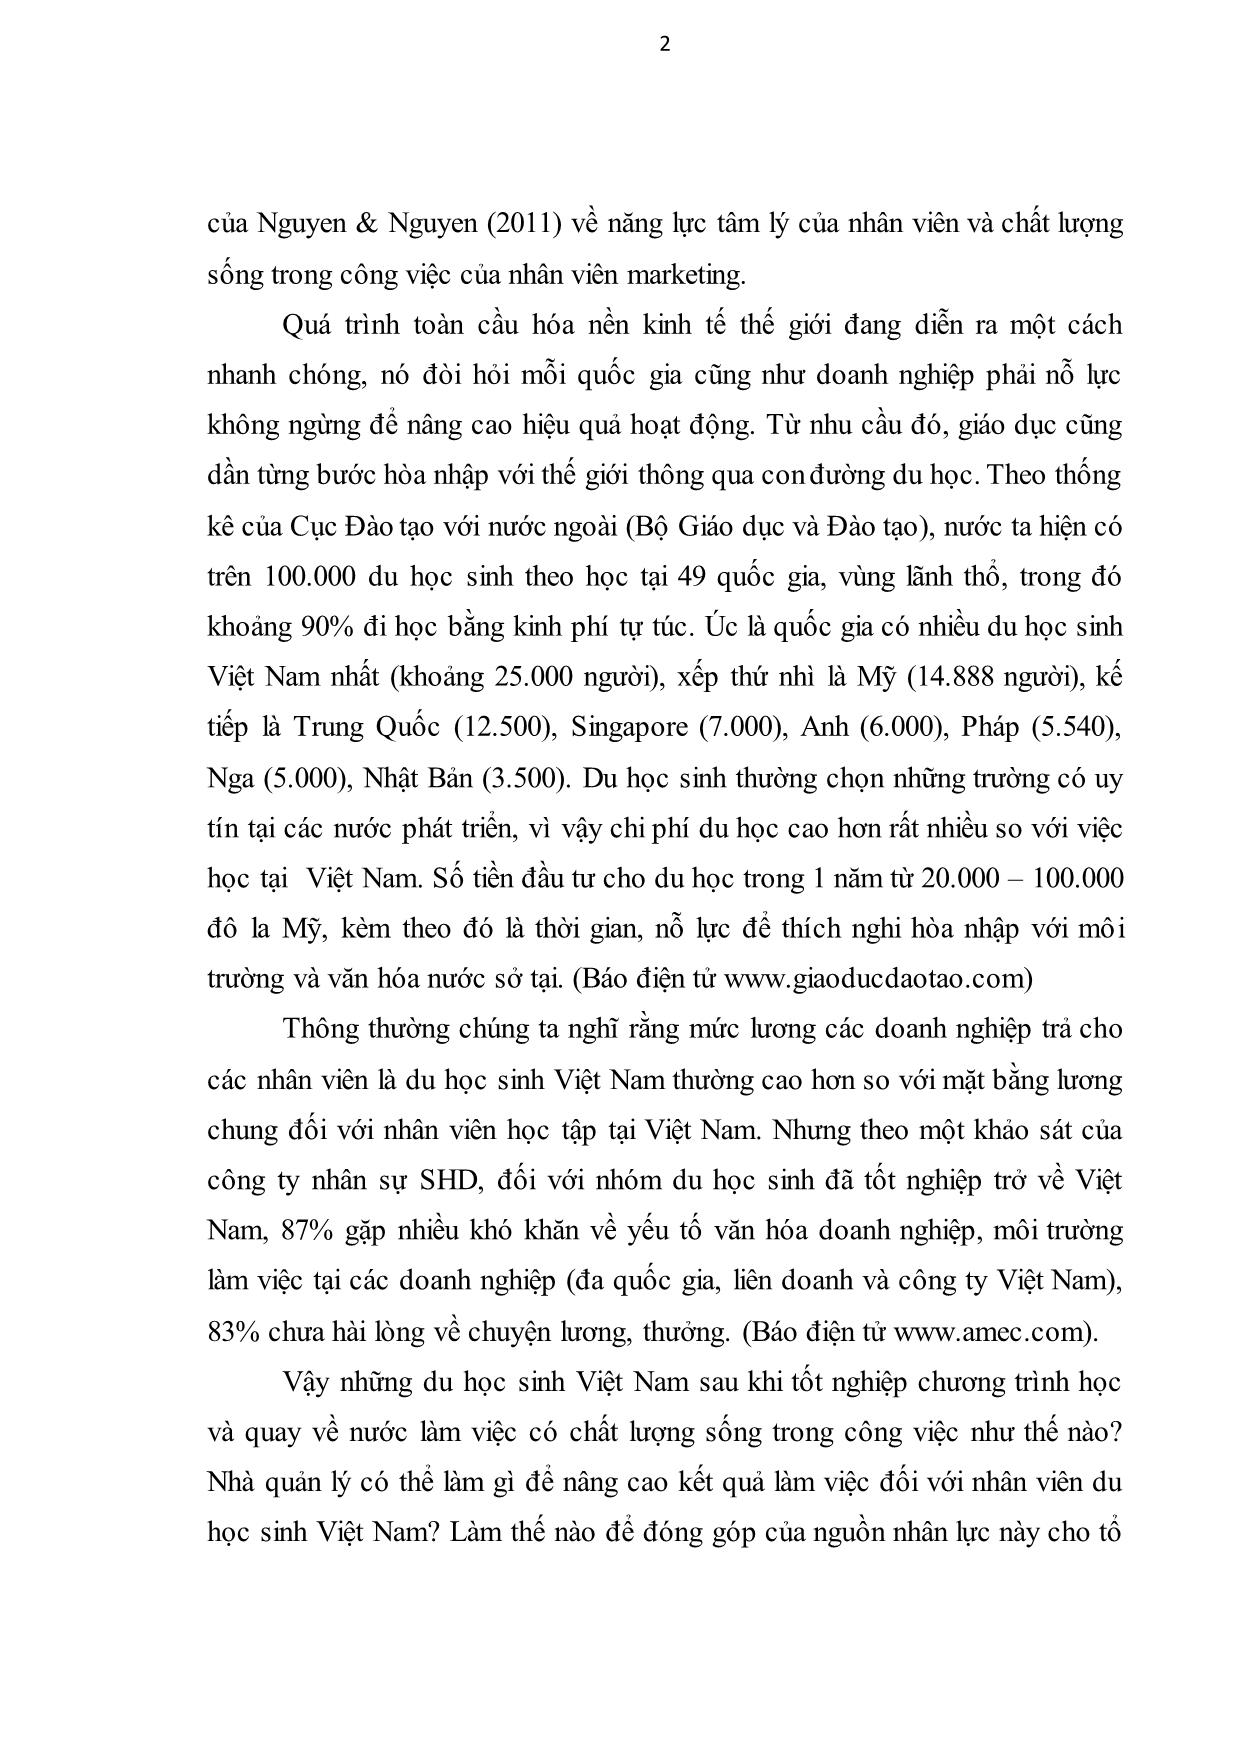 Luận văn Chất lượng sống trong công việc và kết quả công việc của nhân viên du học sinh Việt Nam trang 9